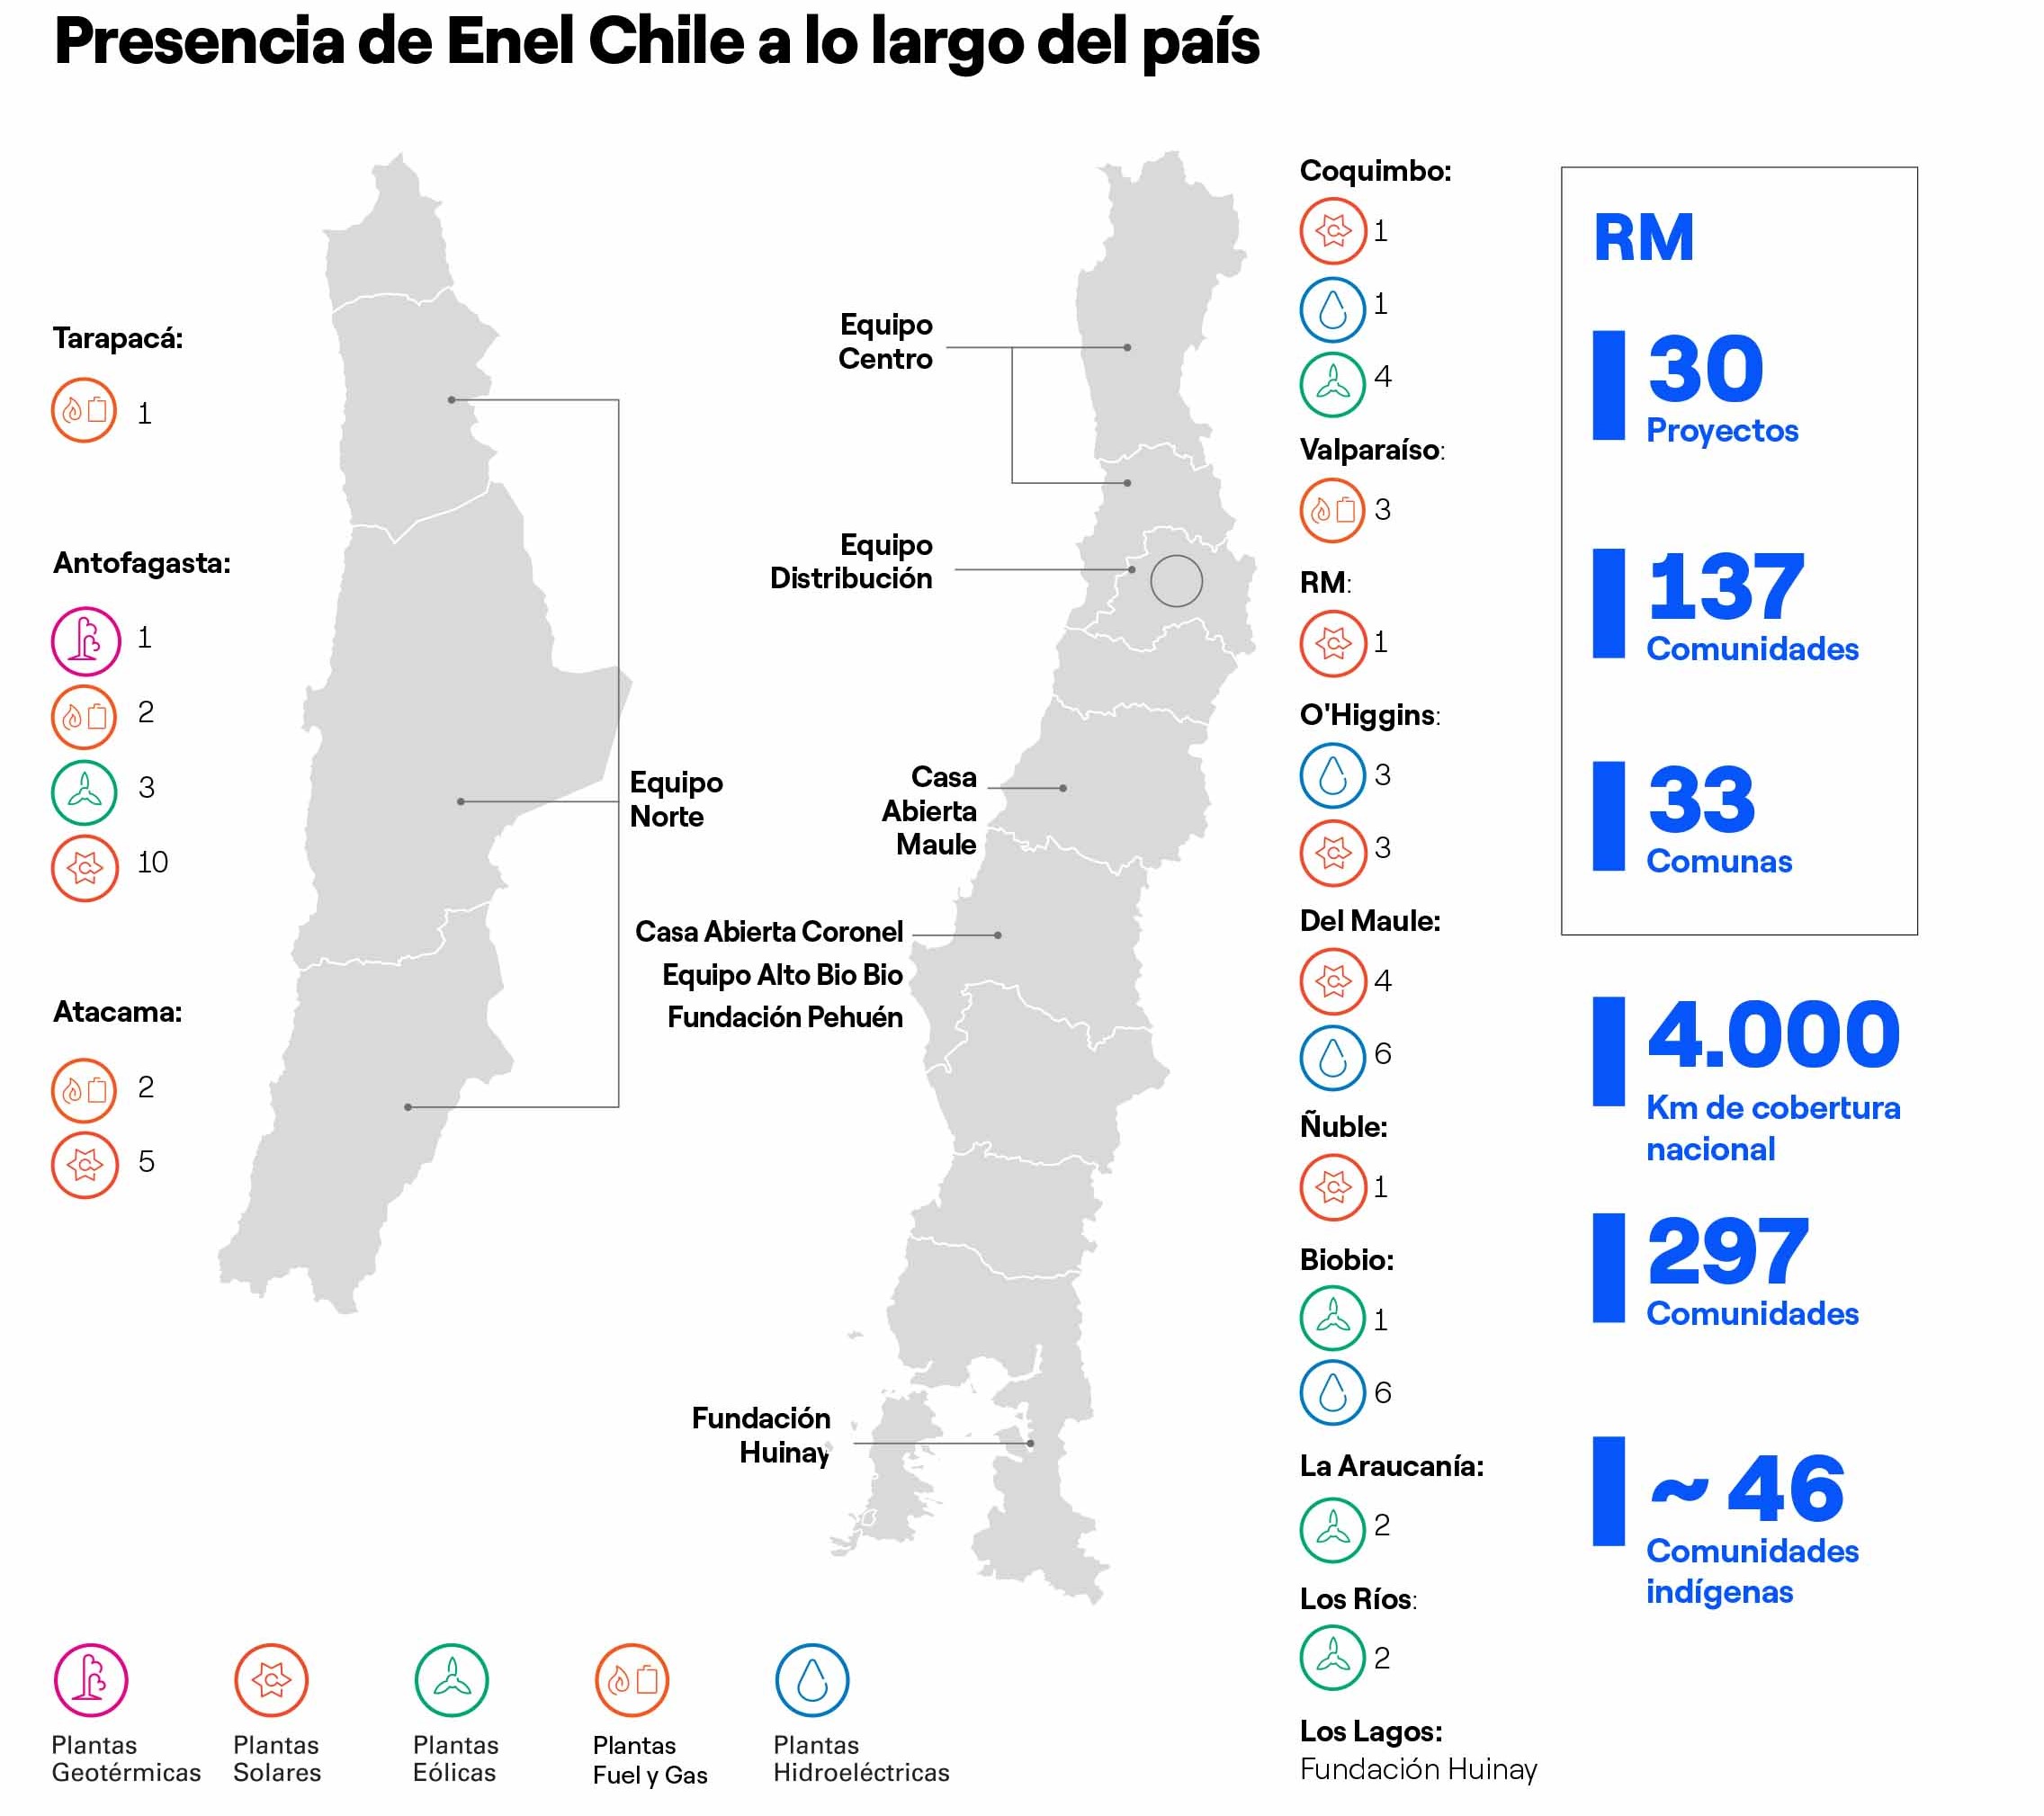 Presencia de Enel Chile a lo largo del país